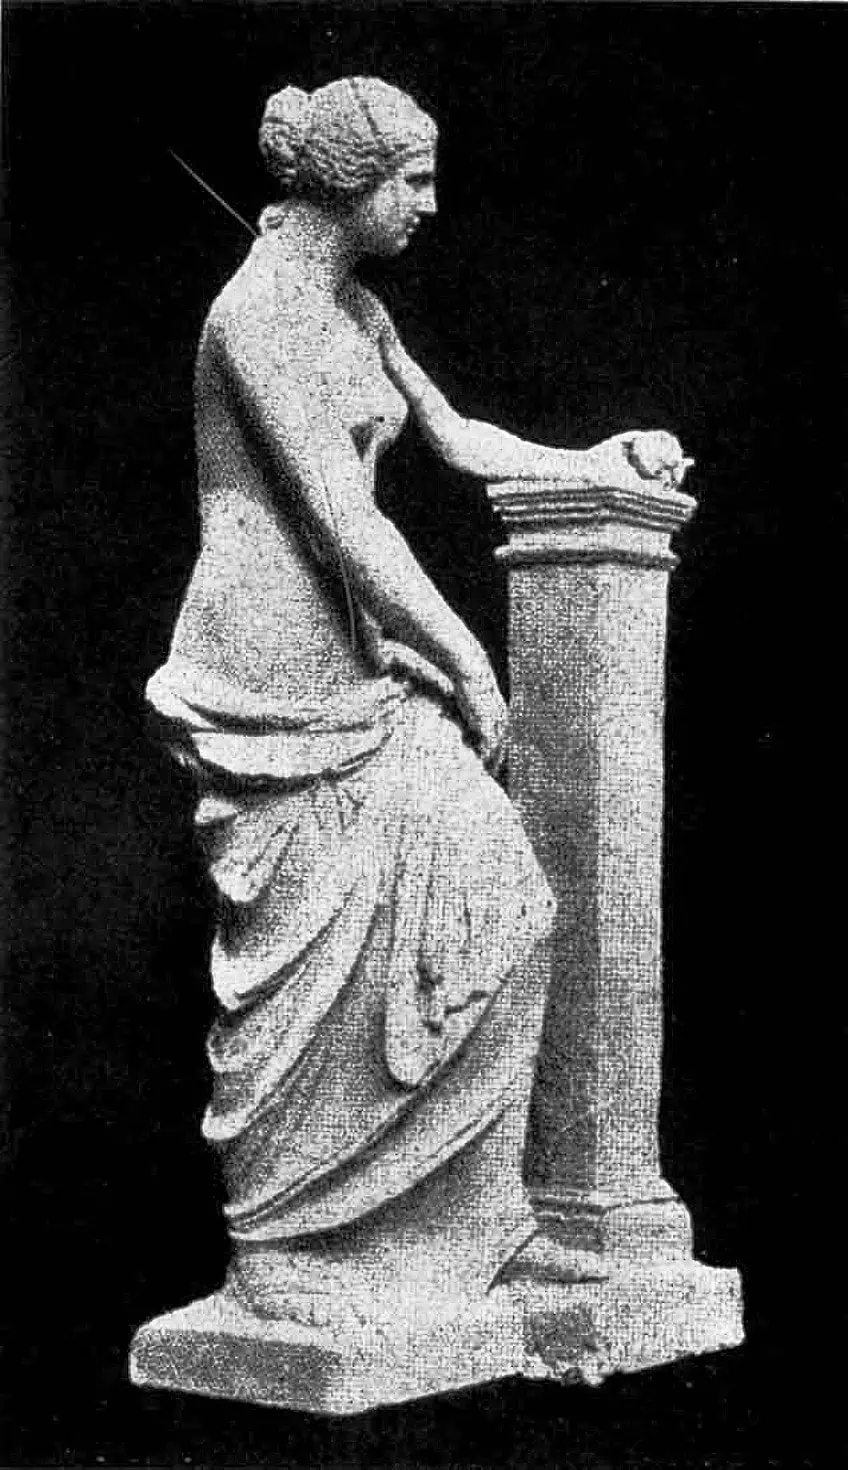 Venus de Milo Skulptur mit Armen